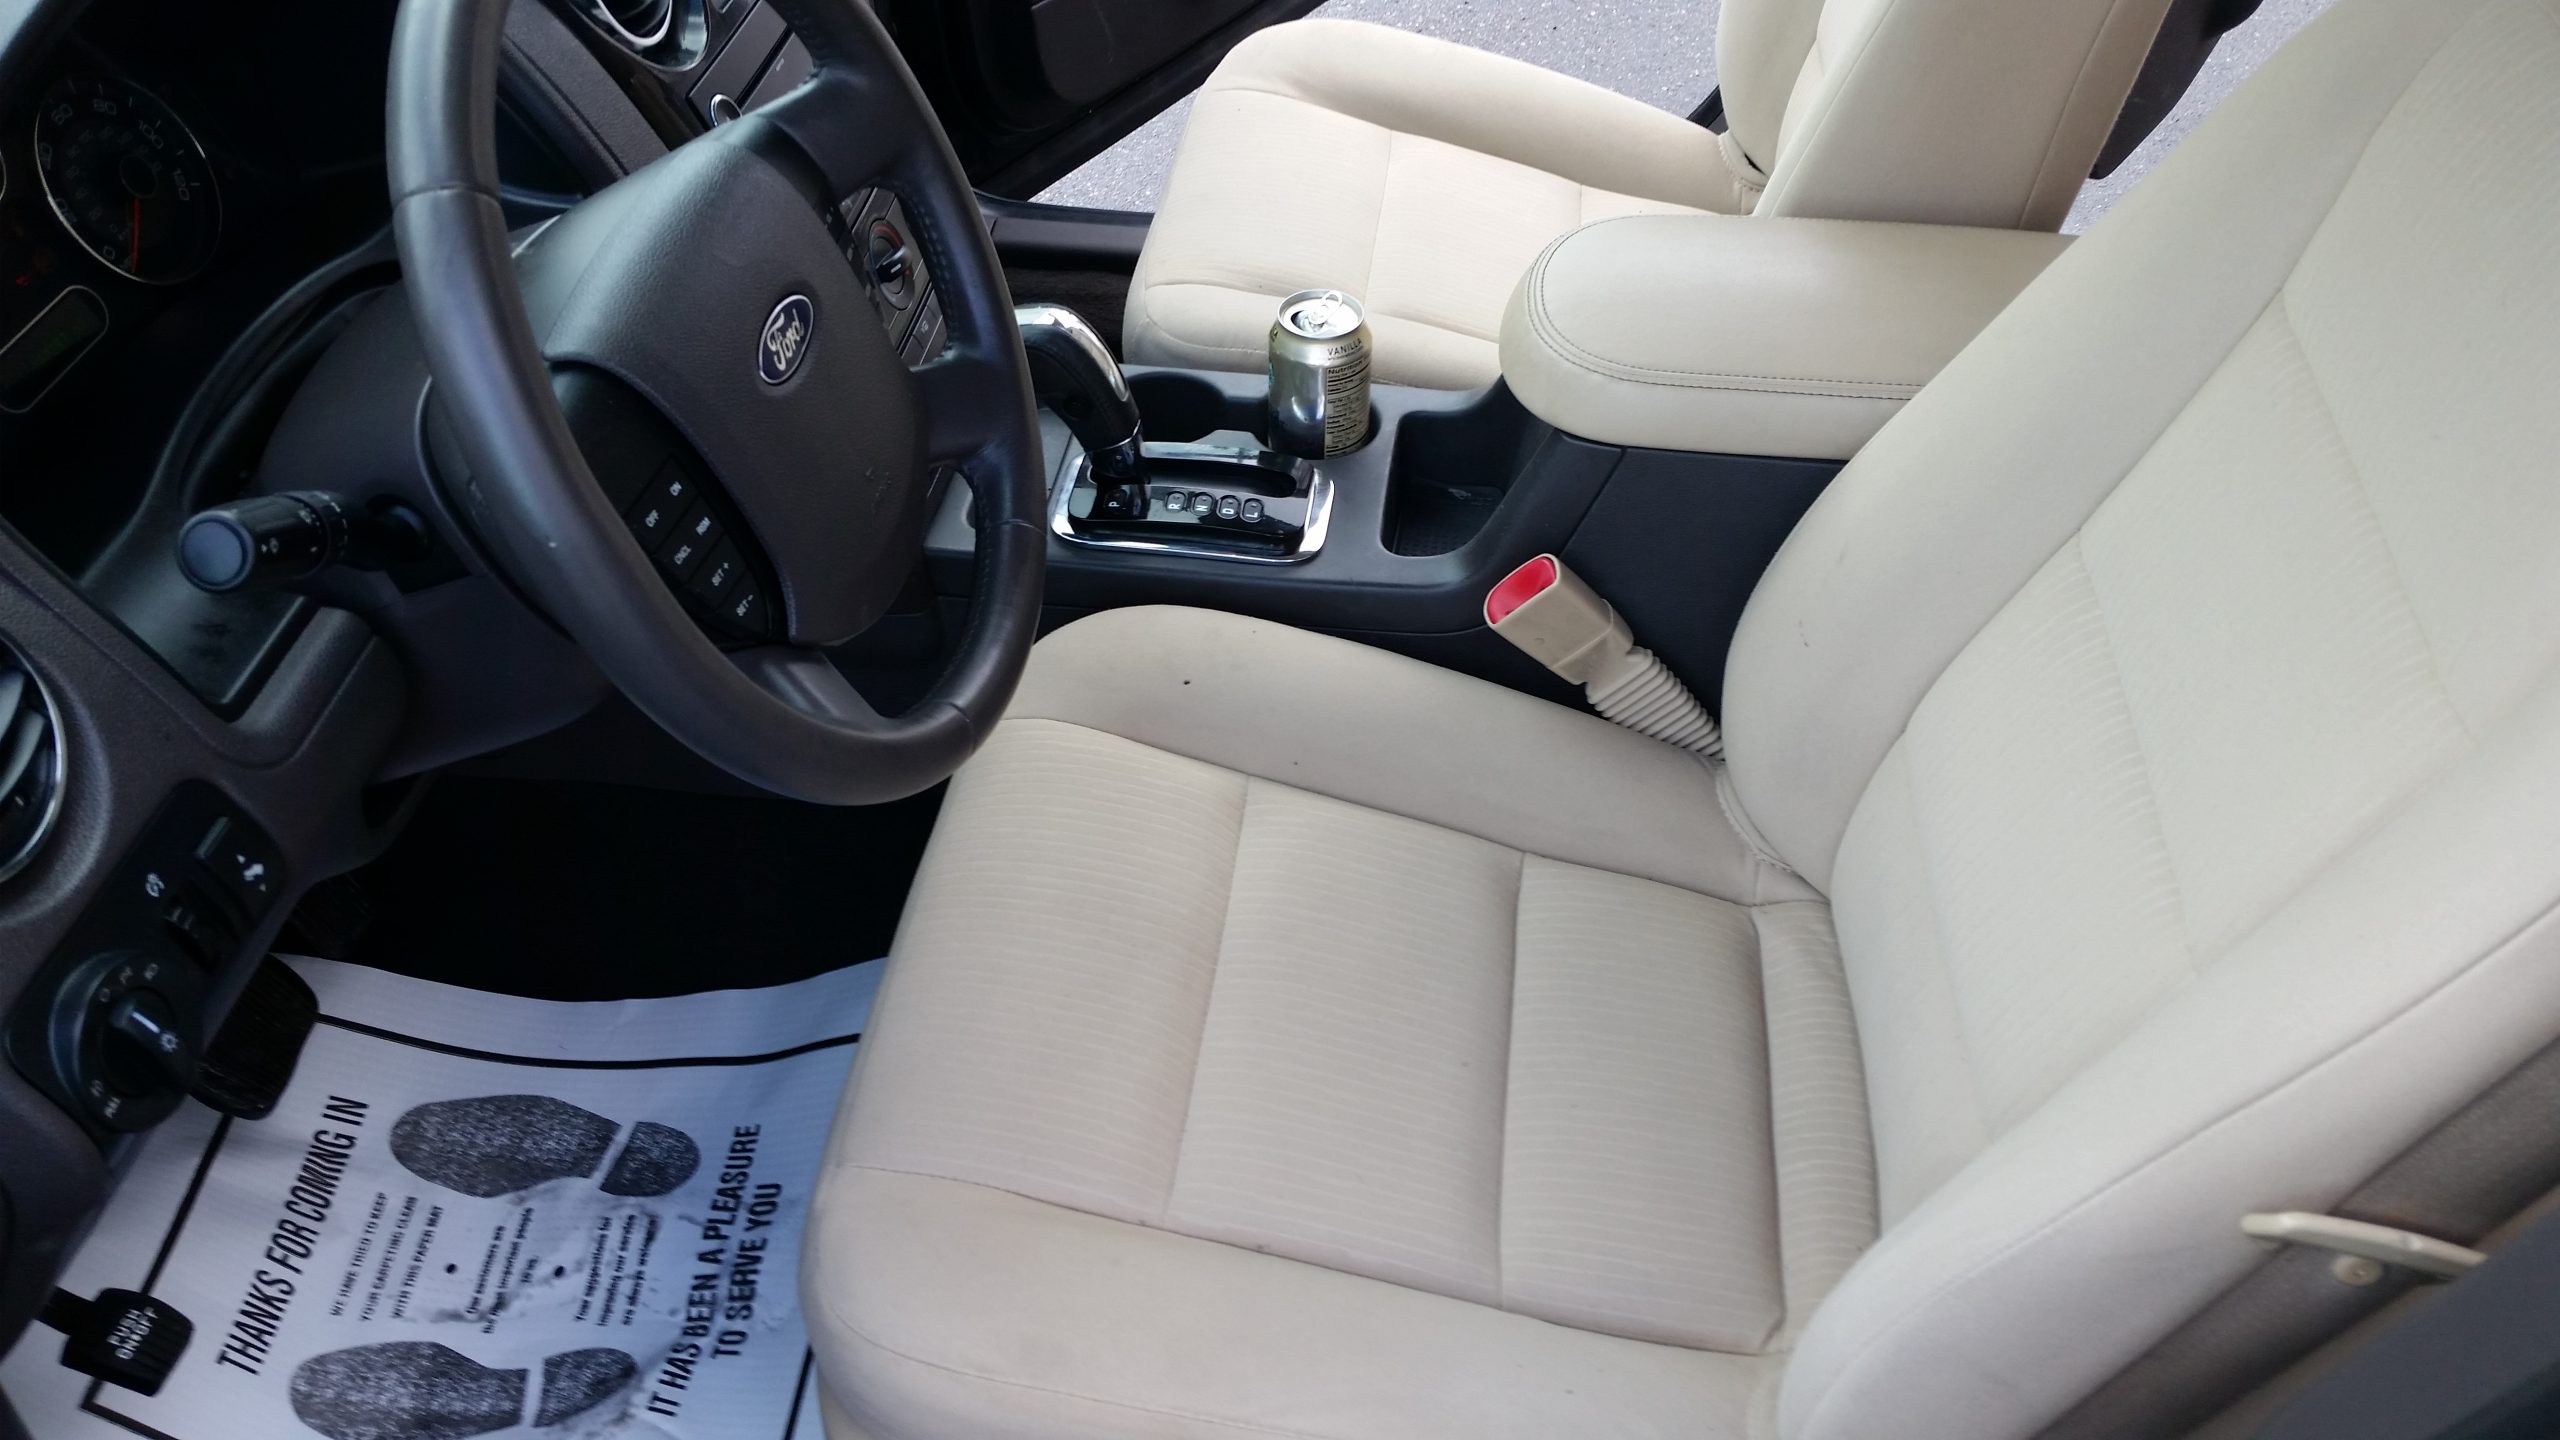 car interior image after detailing (1)